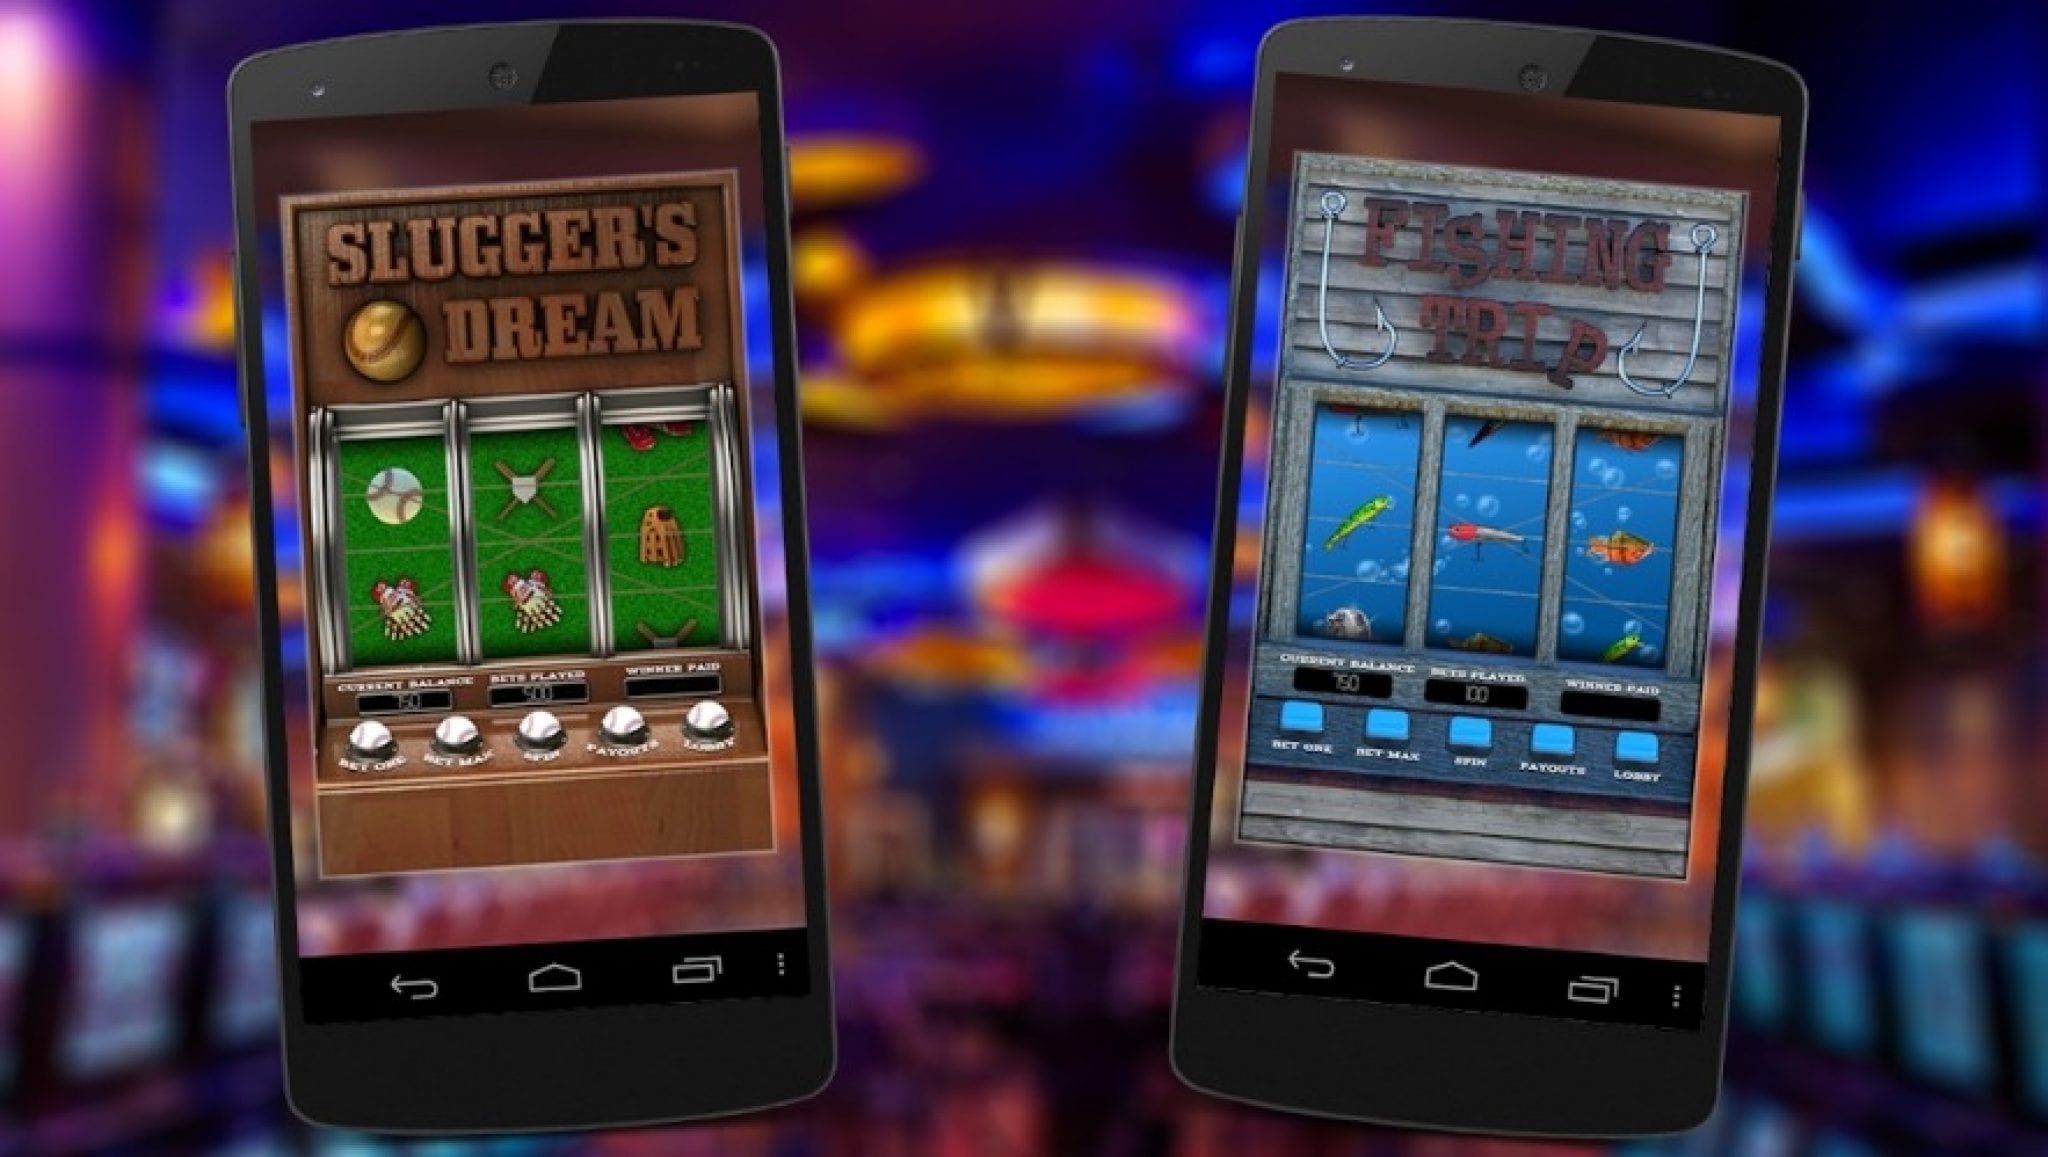 Mobile casino gaming. Казино для мобильного телефона. Казино для сотового телефона. Мобильное казино для андроид. Казино на деньги андроид.